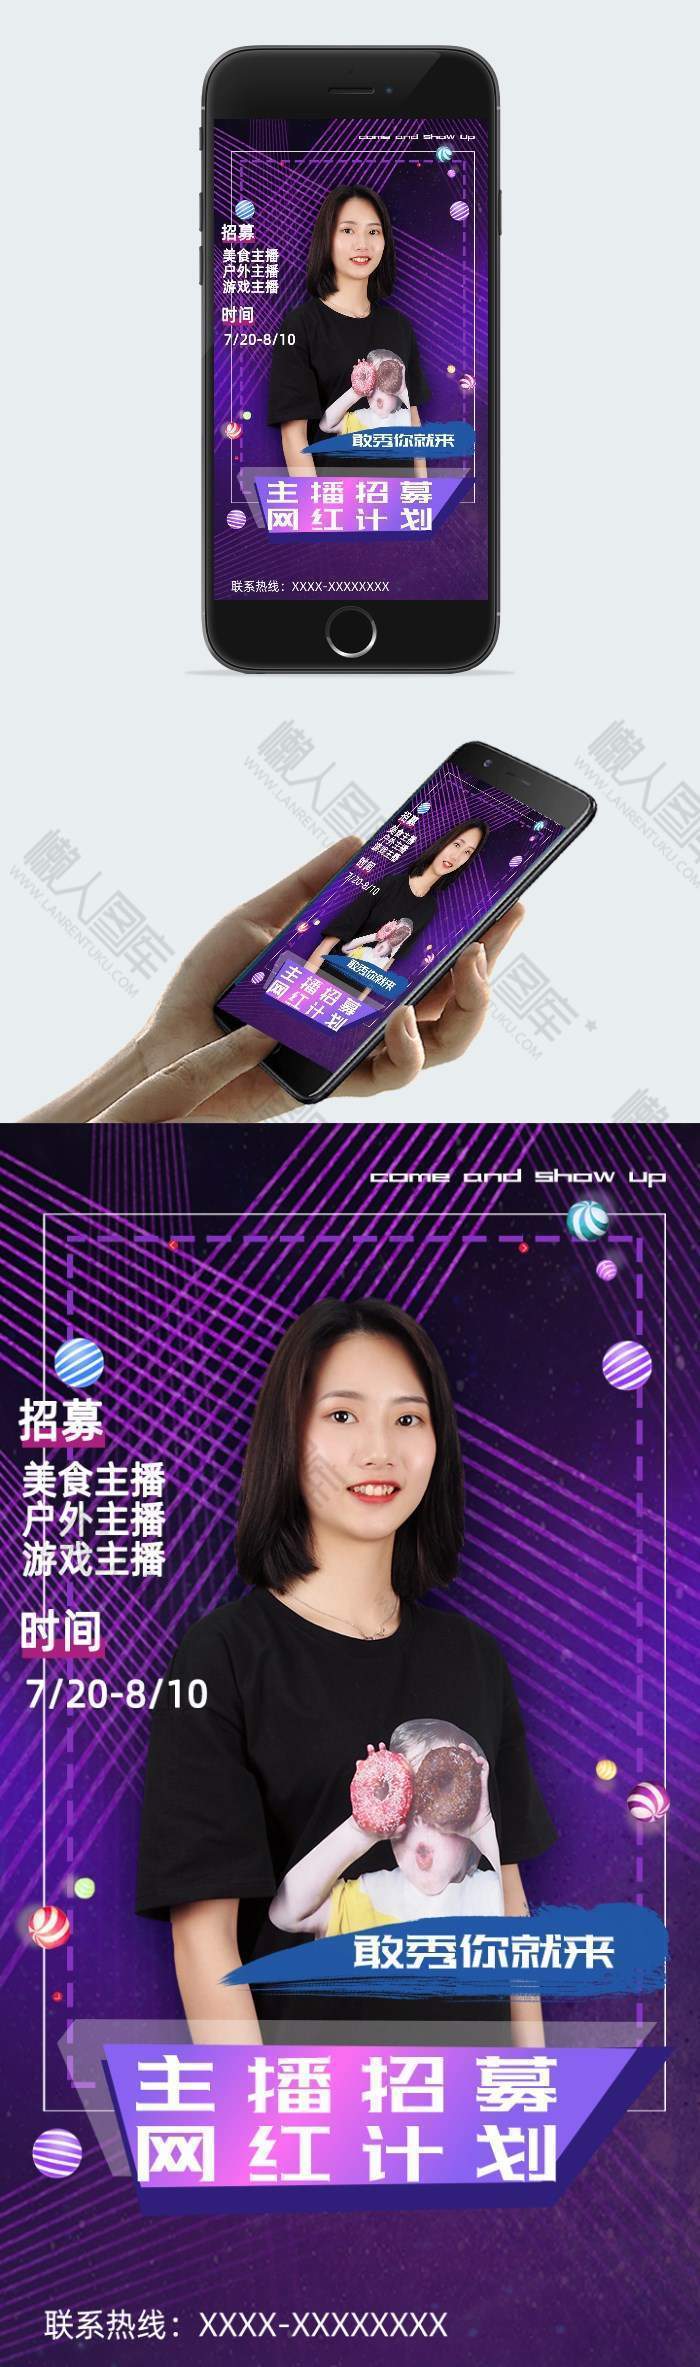 紫色背景主播招募手机广告平面海报